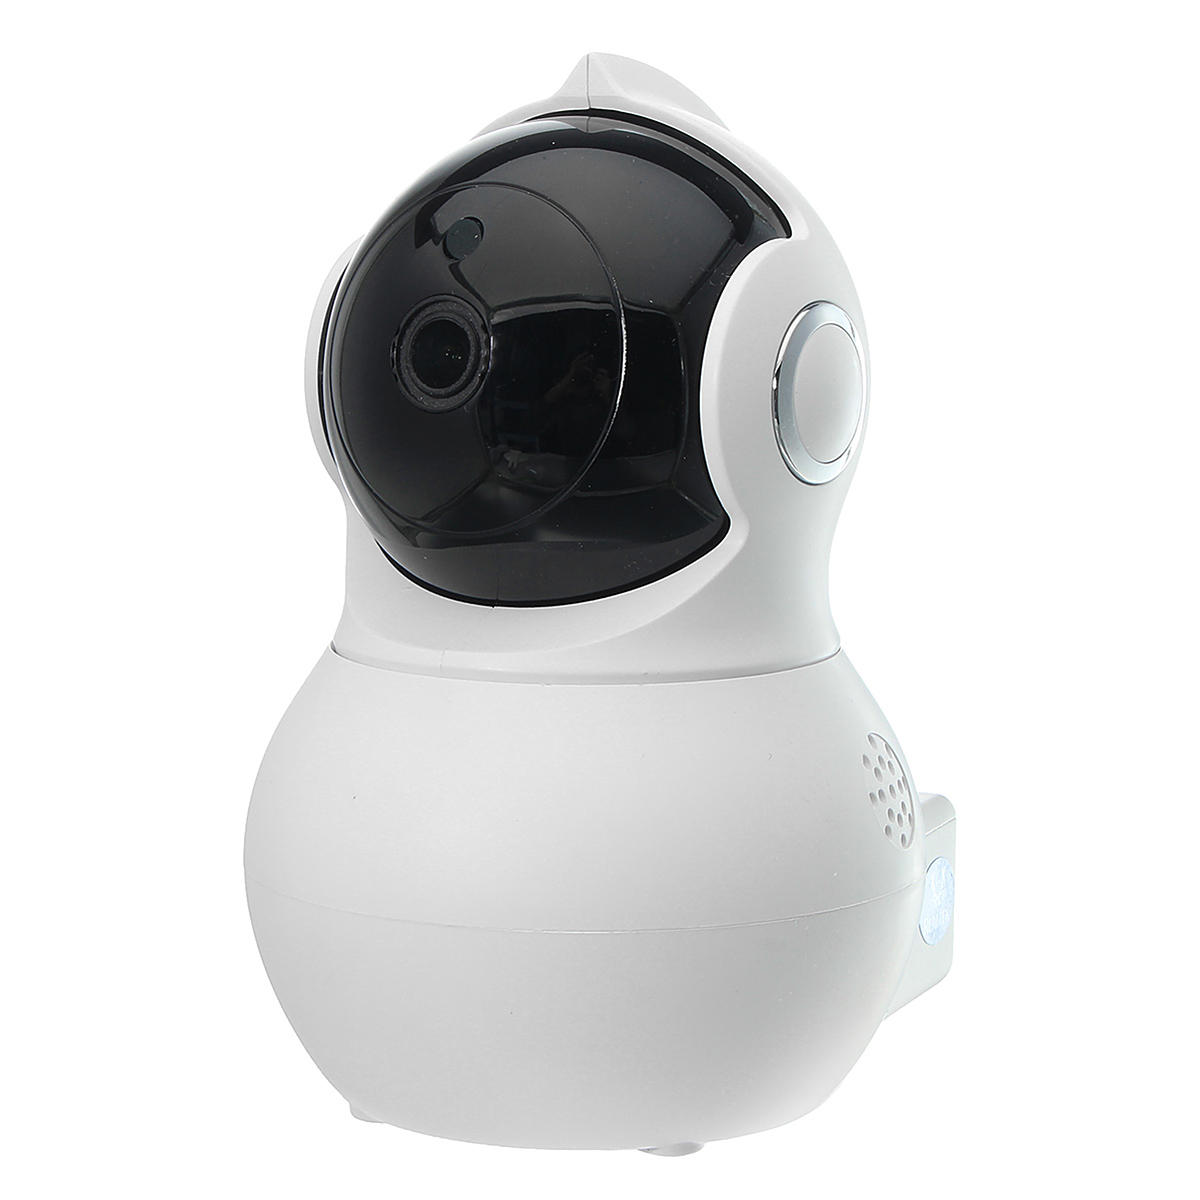 Q8 Home Security 1080P HD IP Camrea Draadloze Smart WI-FI Audio CCTV Camera Webcam